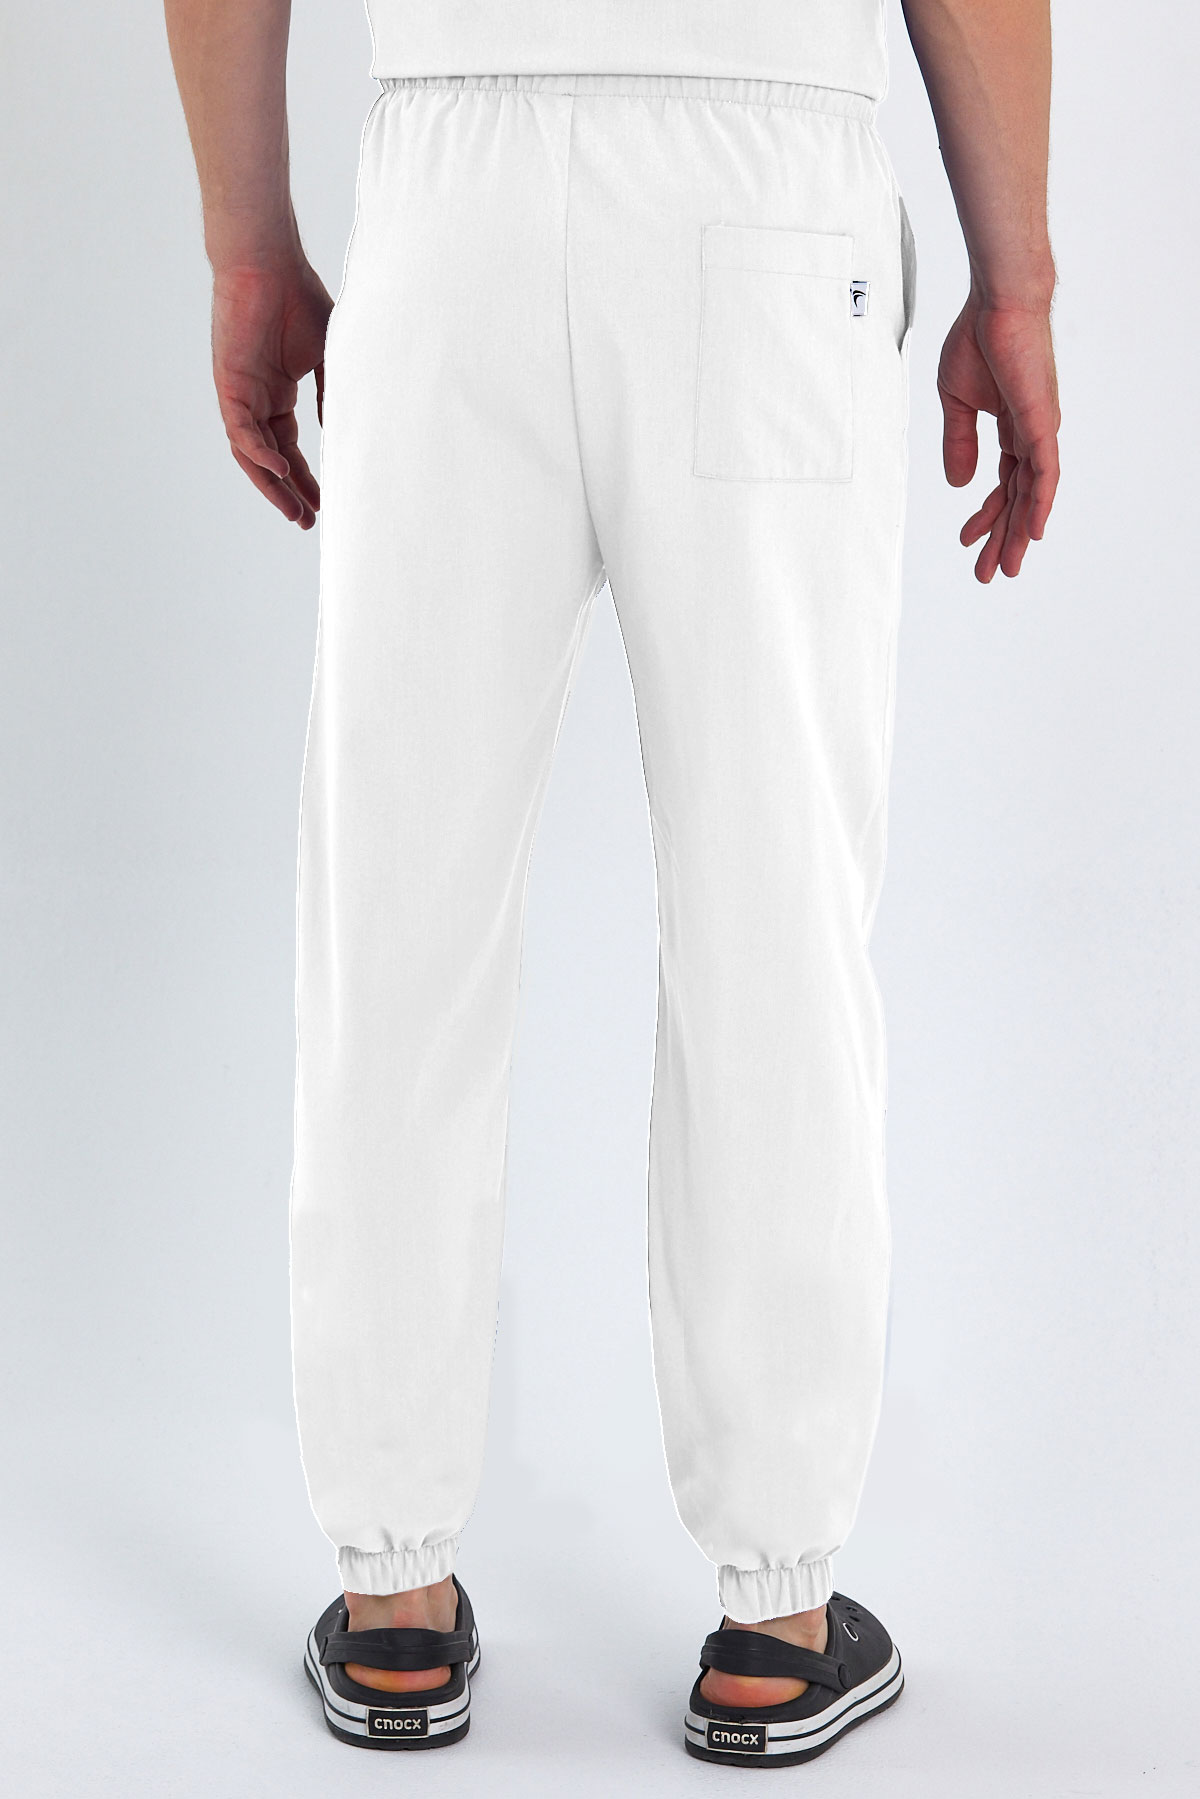 1010 Basic Beyaz Pantolon